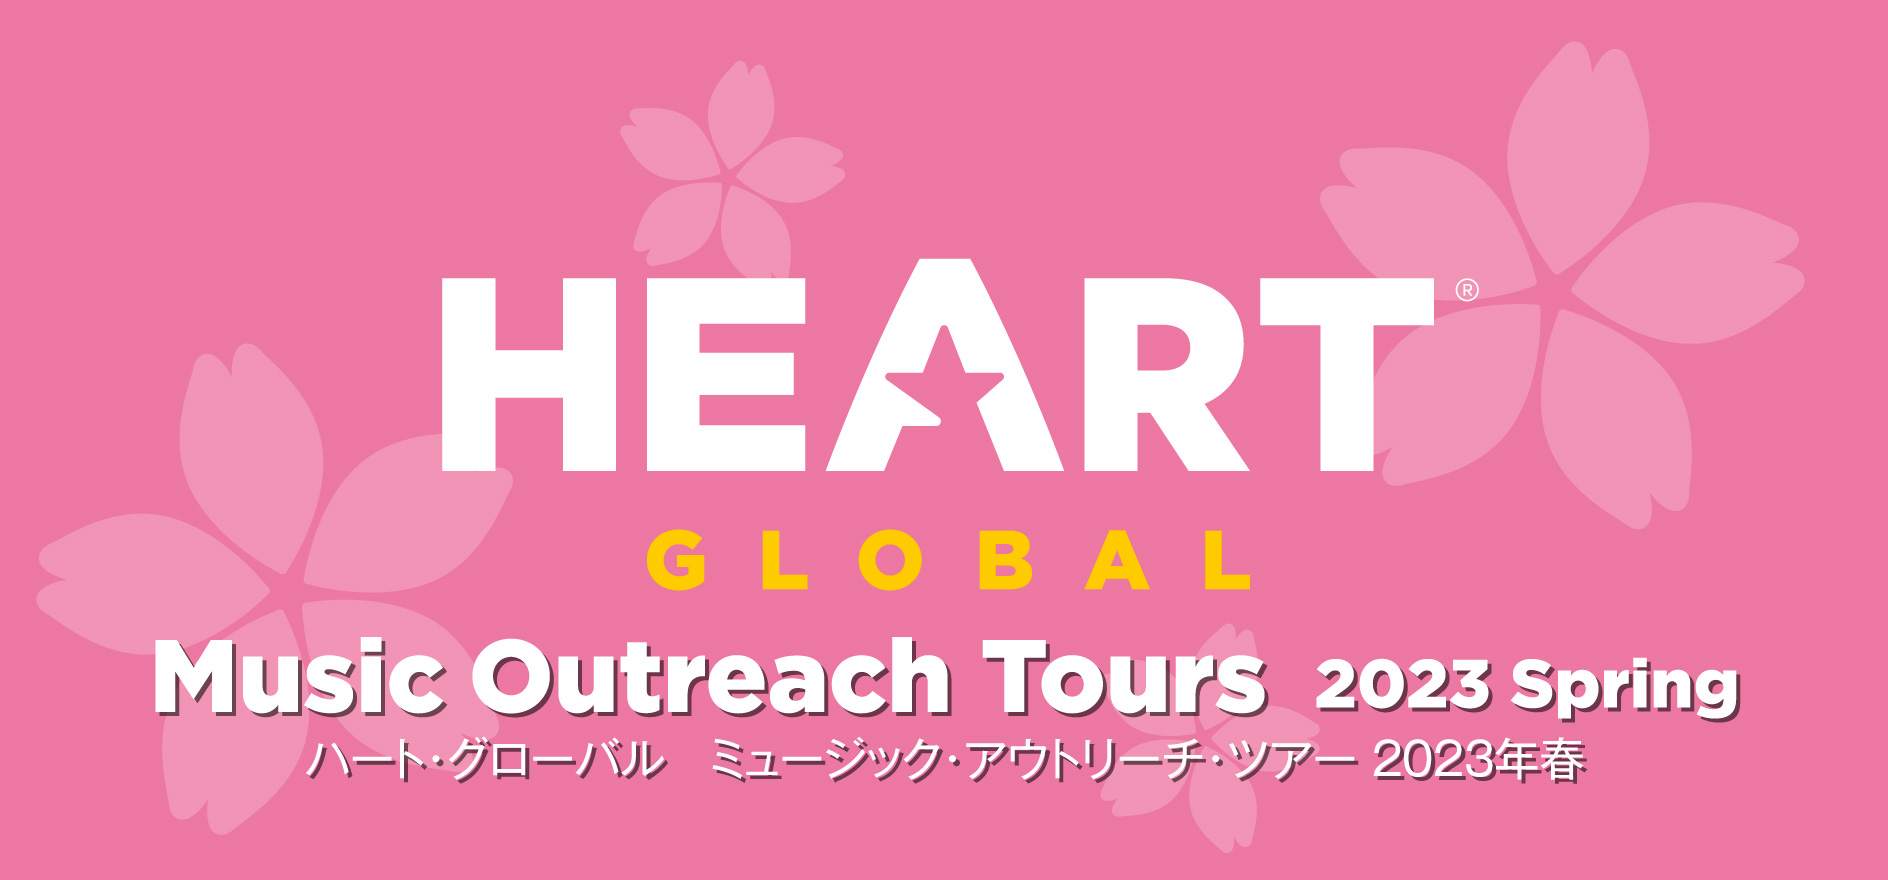 HEART Global ミュージック・アウトリーチ・ツアー 2023春